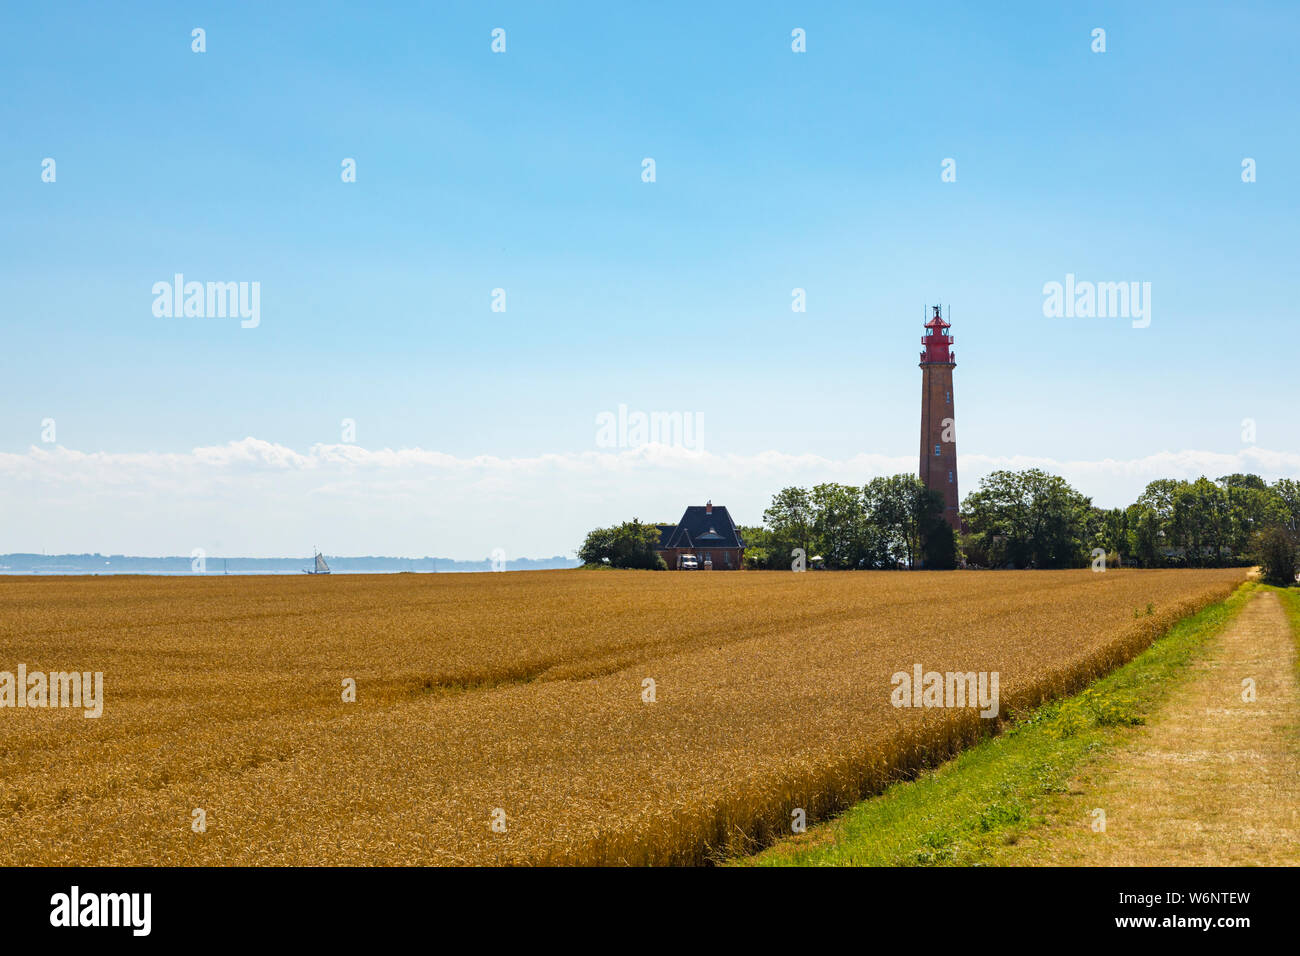 Flügge phare sur l'île de Fehmarn, Allemagne Mer Baltique. Mûres, champ de blé d'or en premier plan Banque D'Images